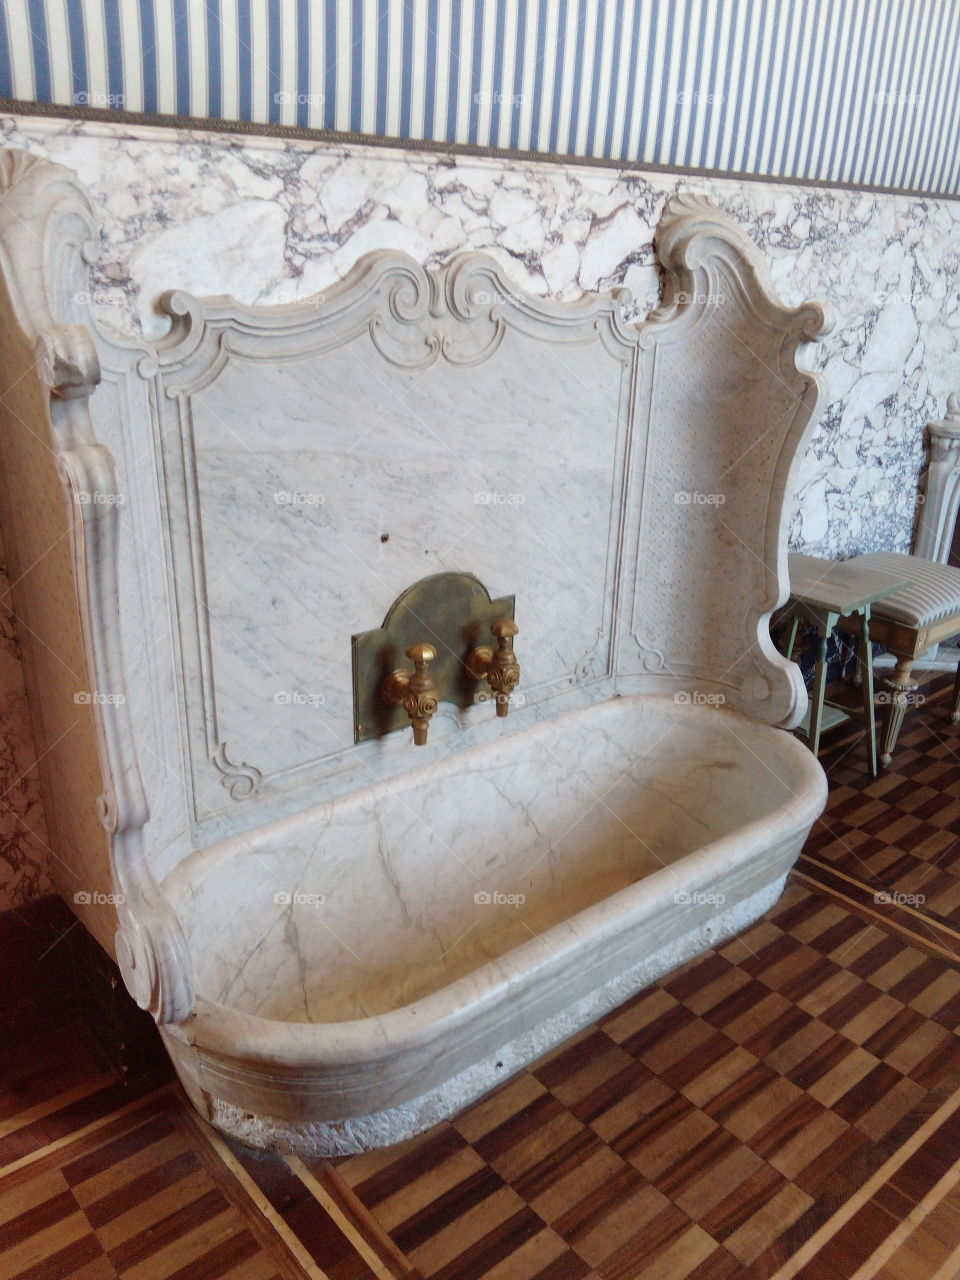 Royal Villa of Monza, Italy. Bathroom's queen